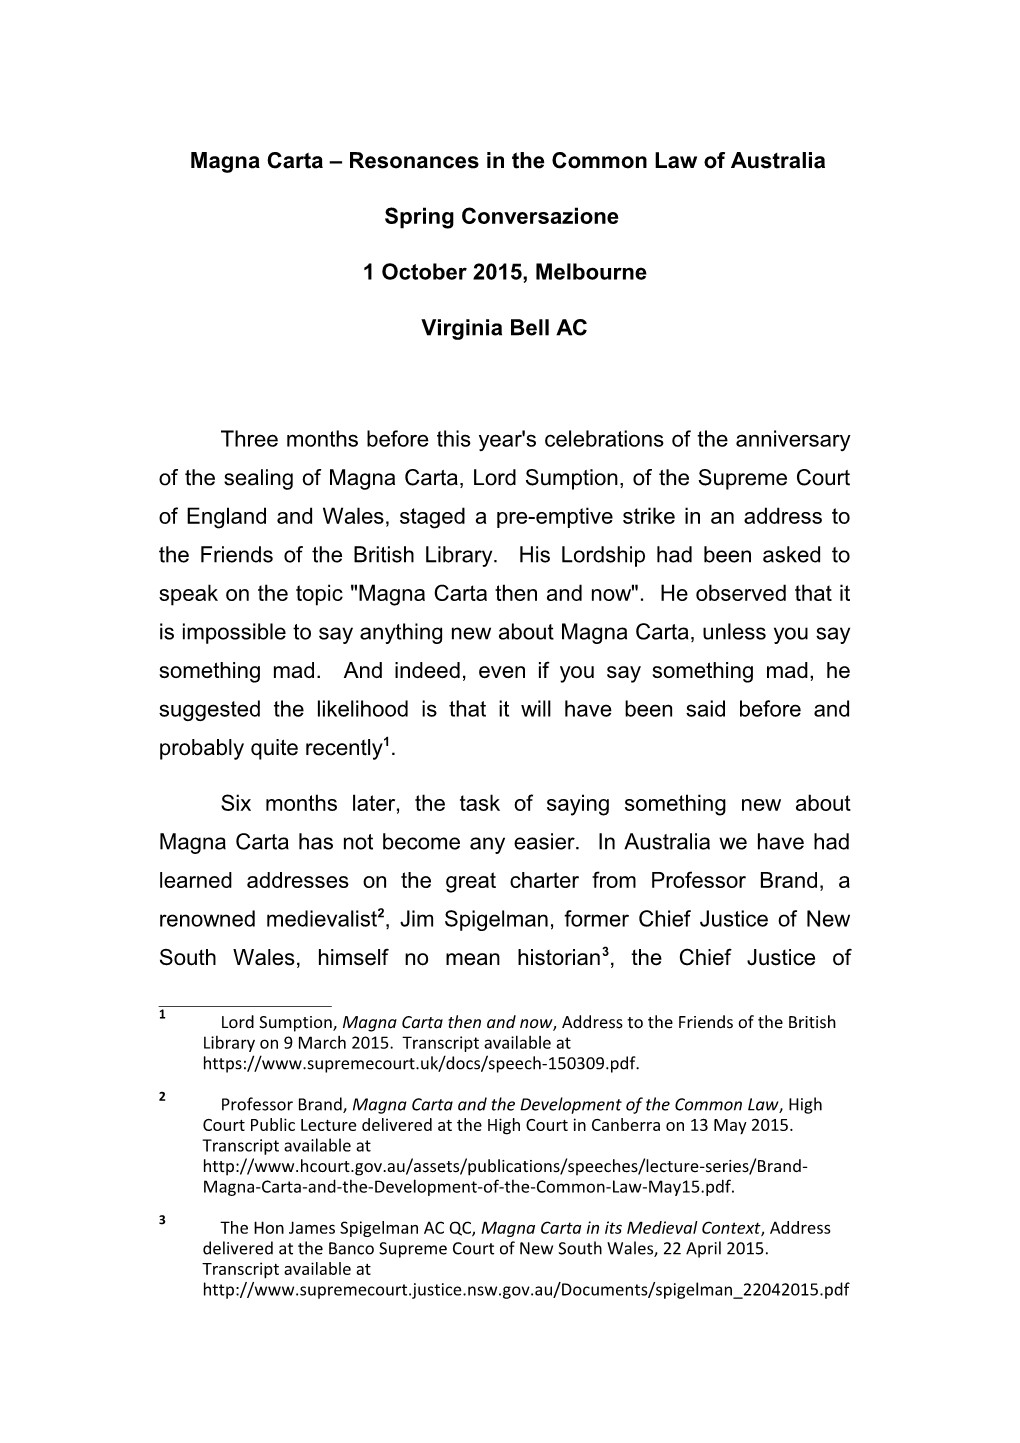 Magna Carta Resonances in the Common Law of Australia